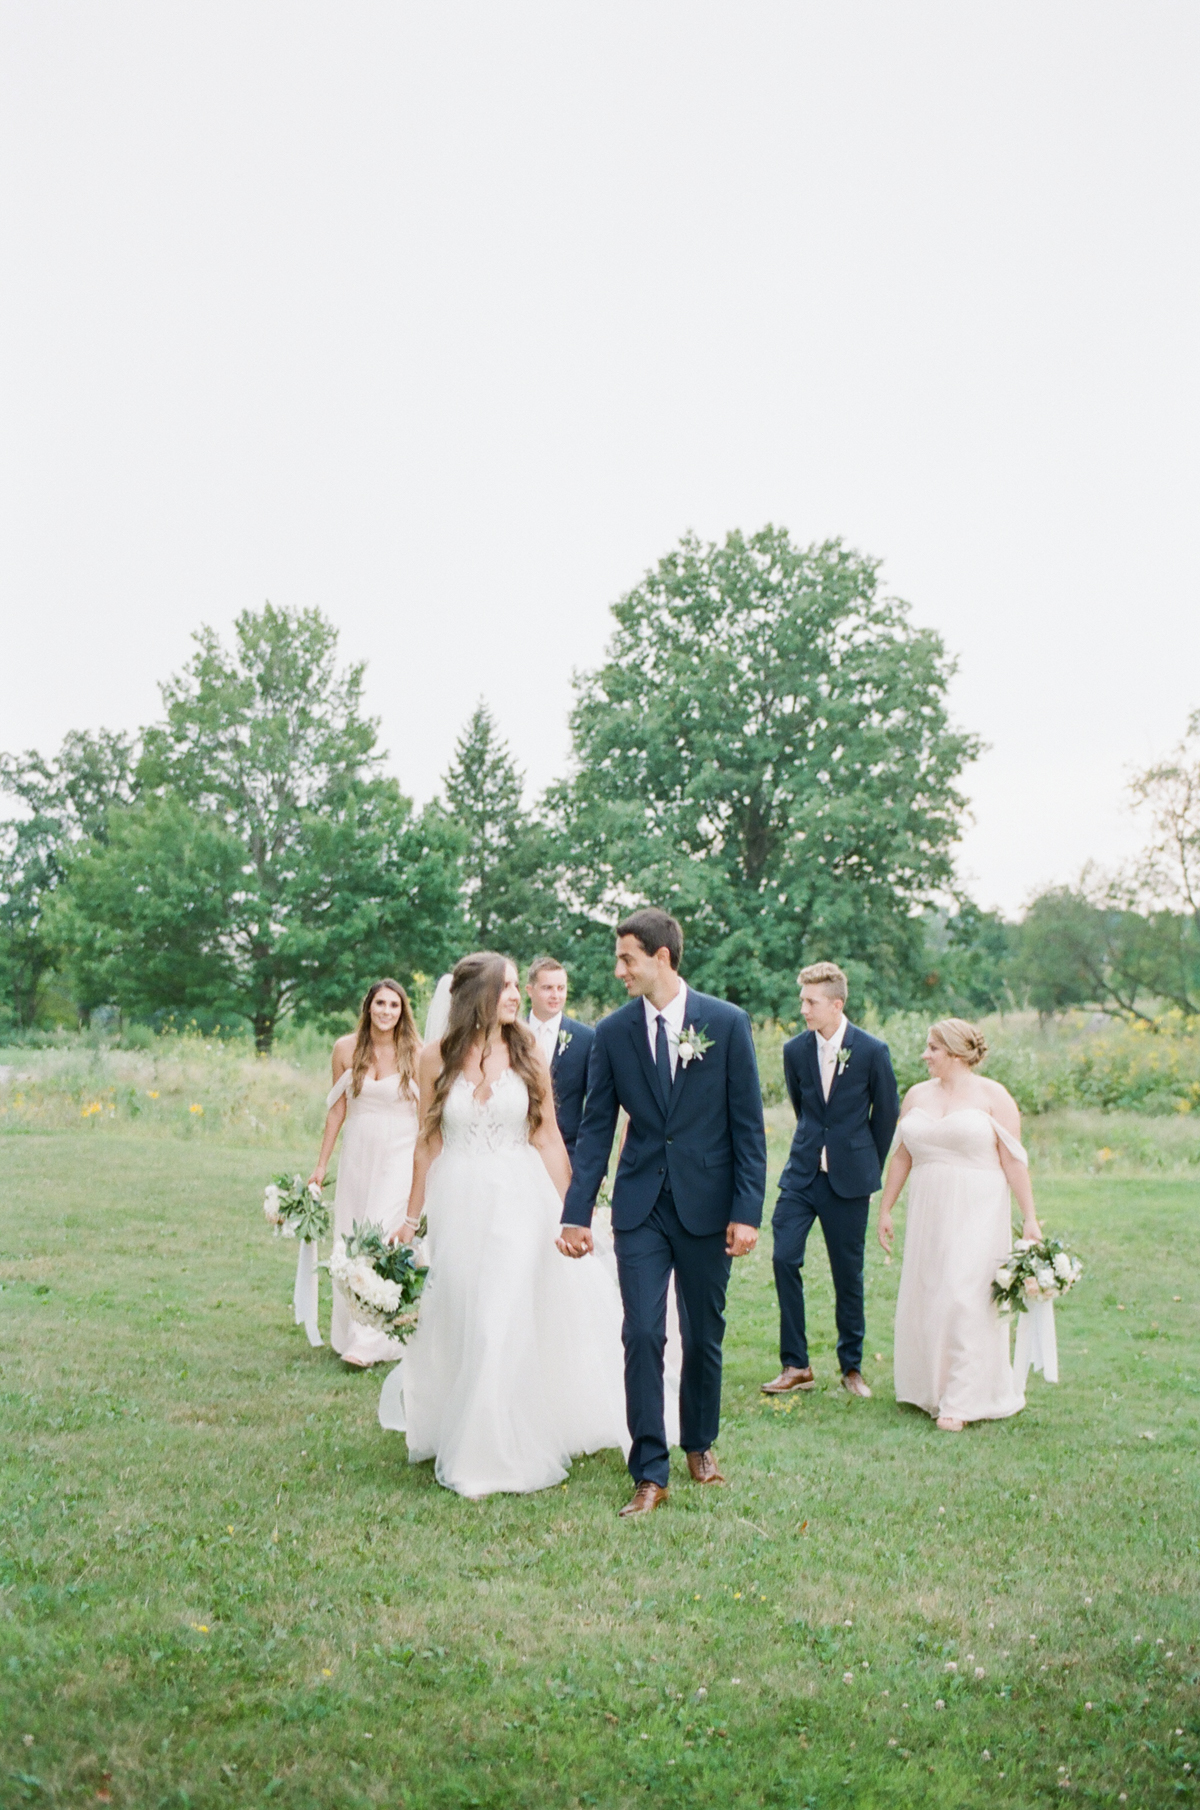 acacia ballroom wedding, cleveland wedding, blush garden wedding, bridal party, bridesmaids, groomsmen